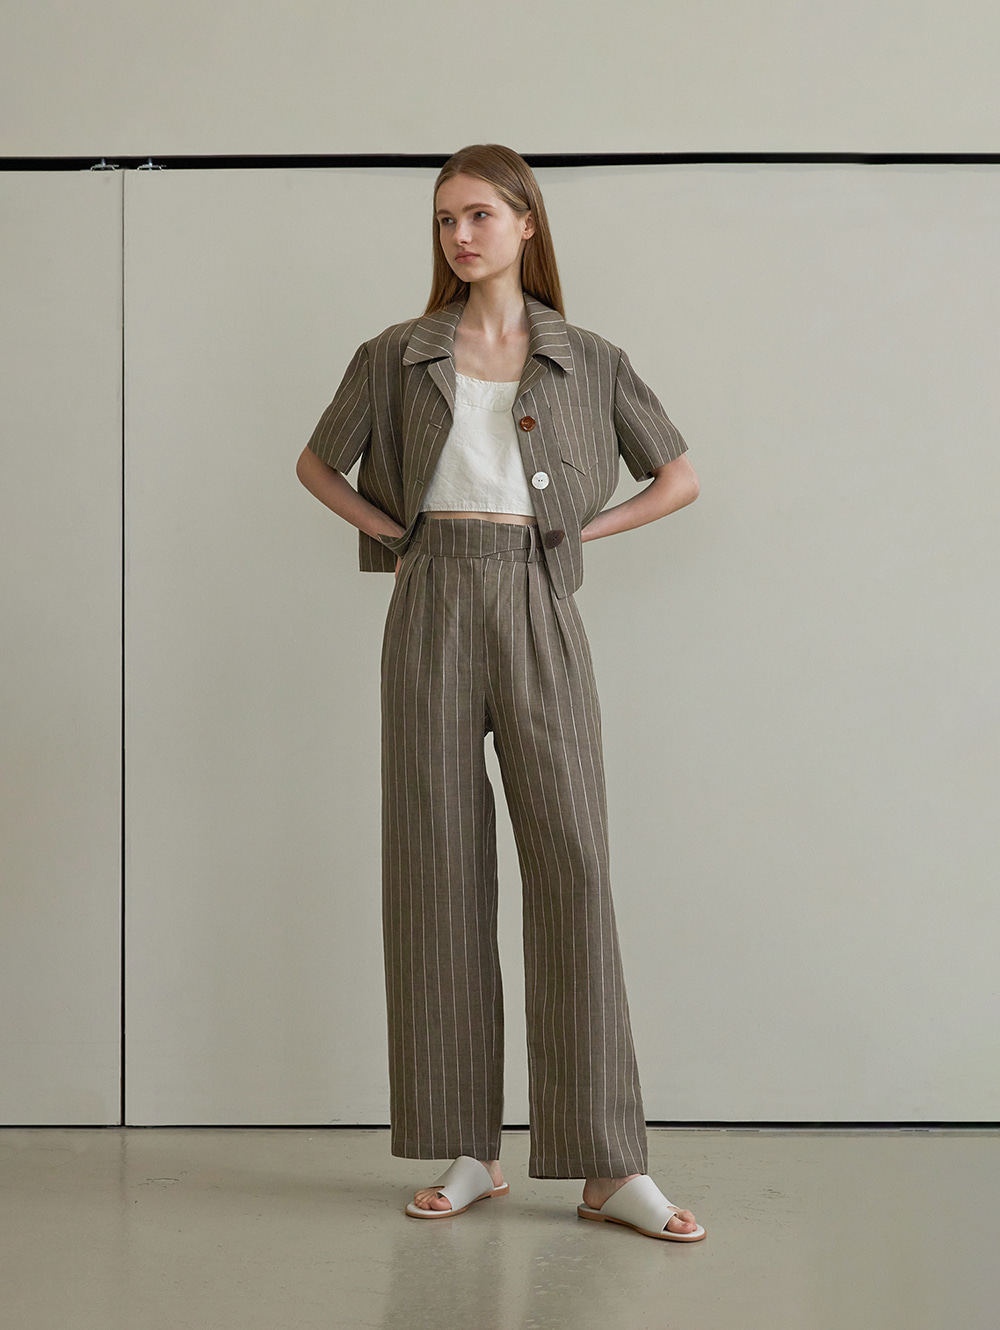 Stripe linen button pants (khaki)